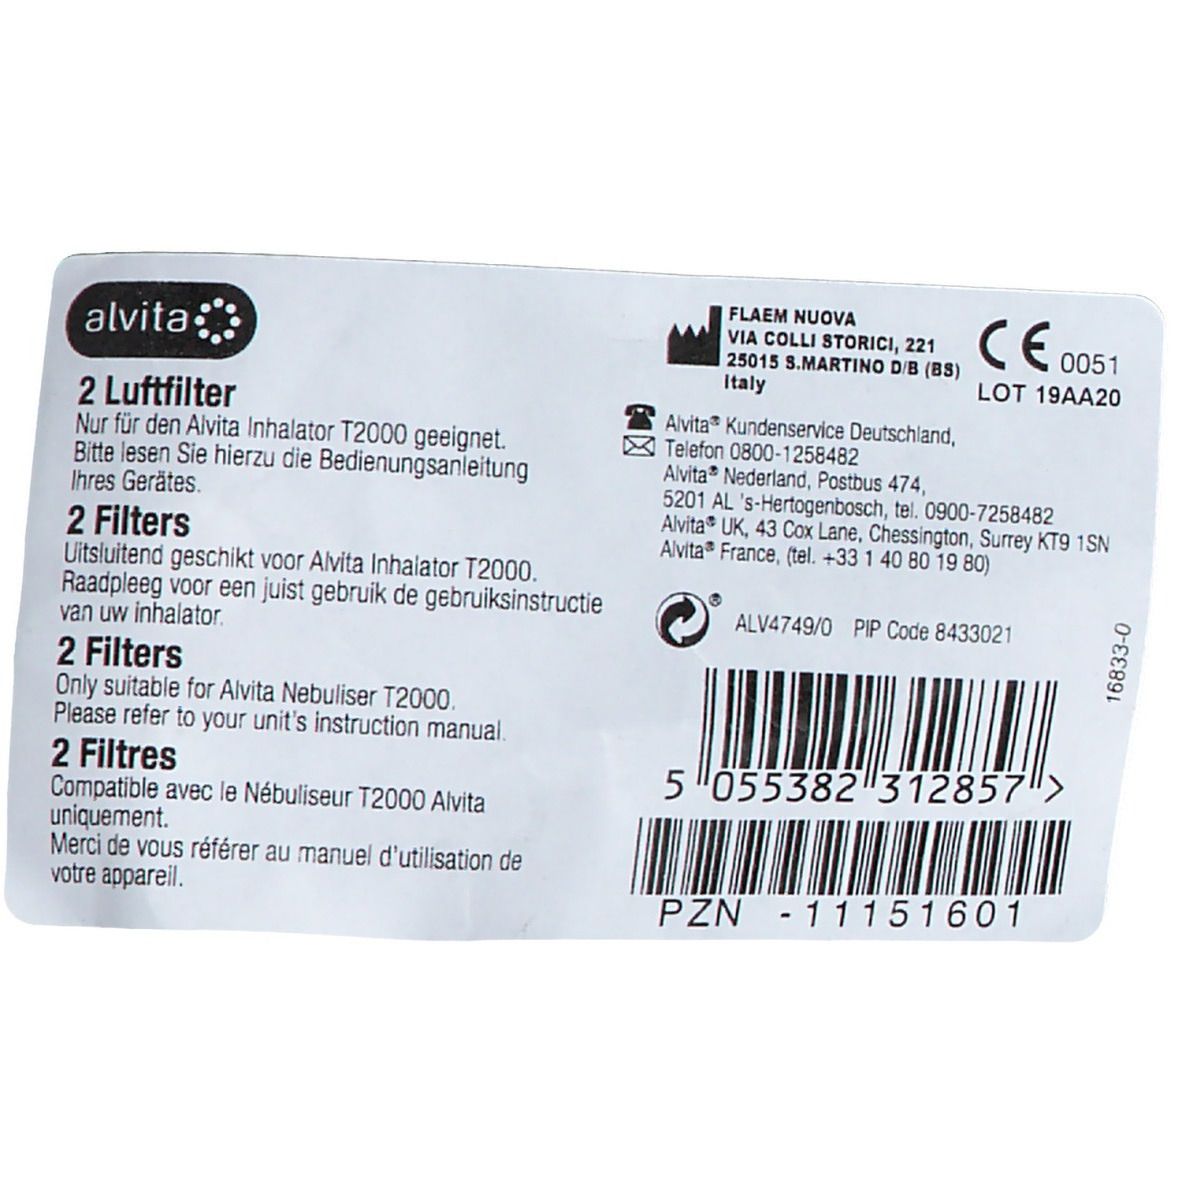 alvita® T 2000 Inhalator Filter